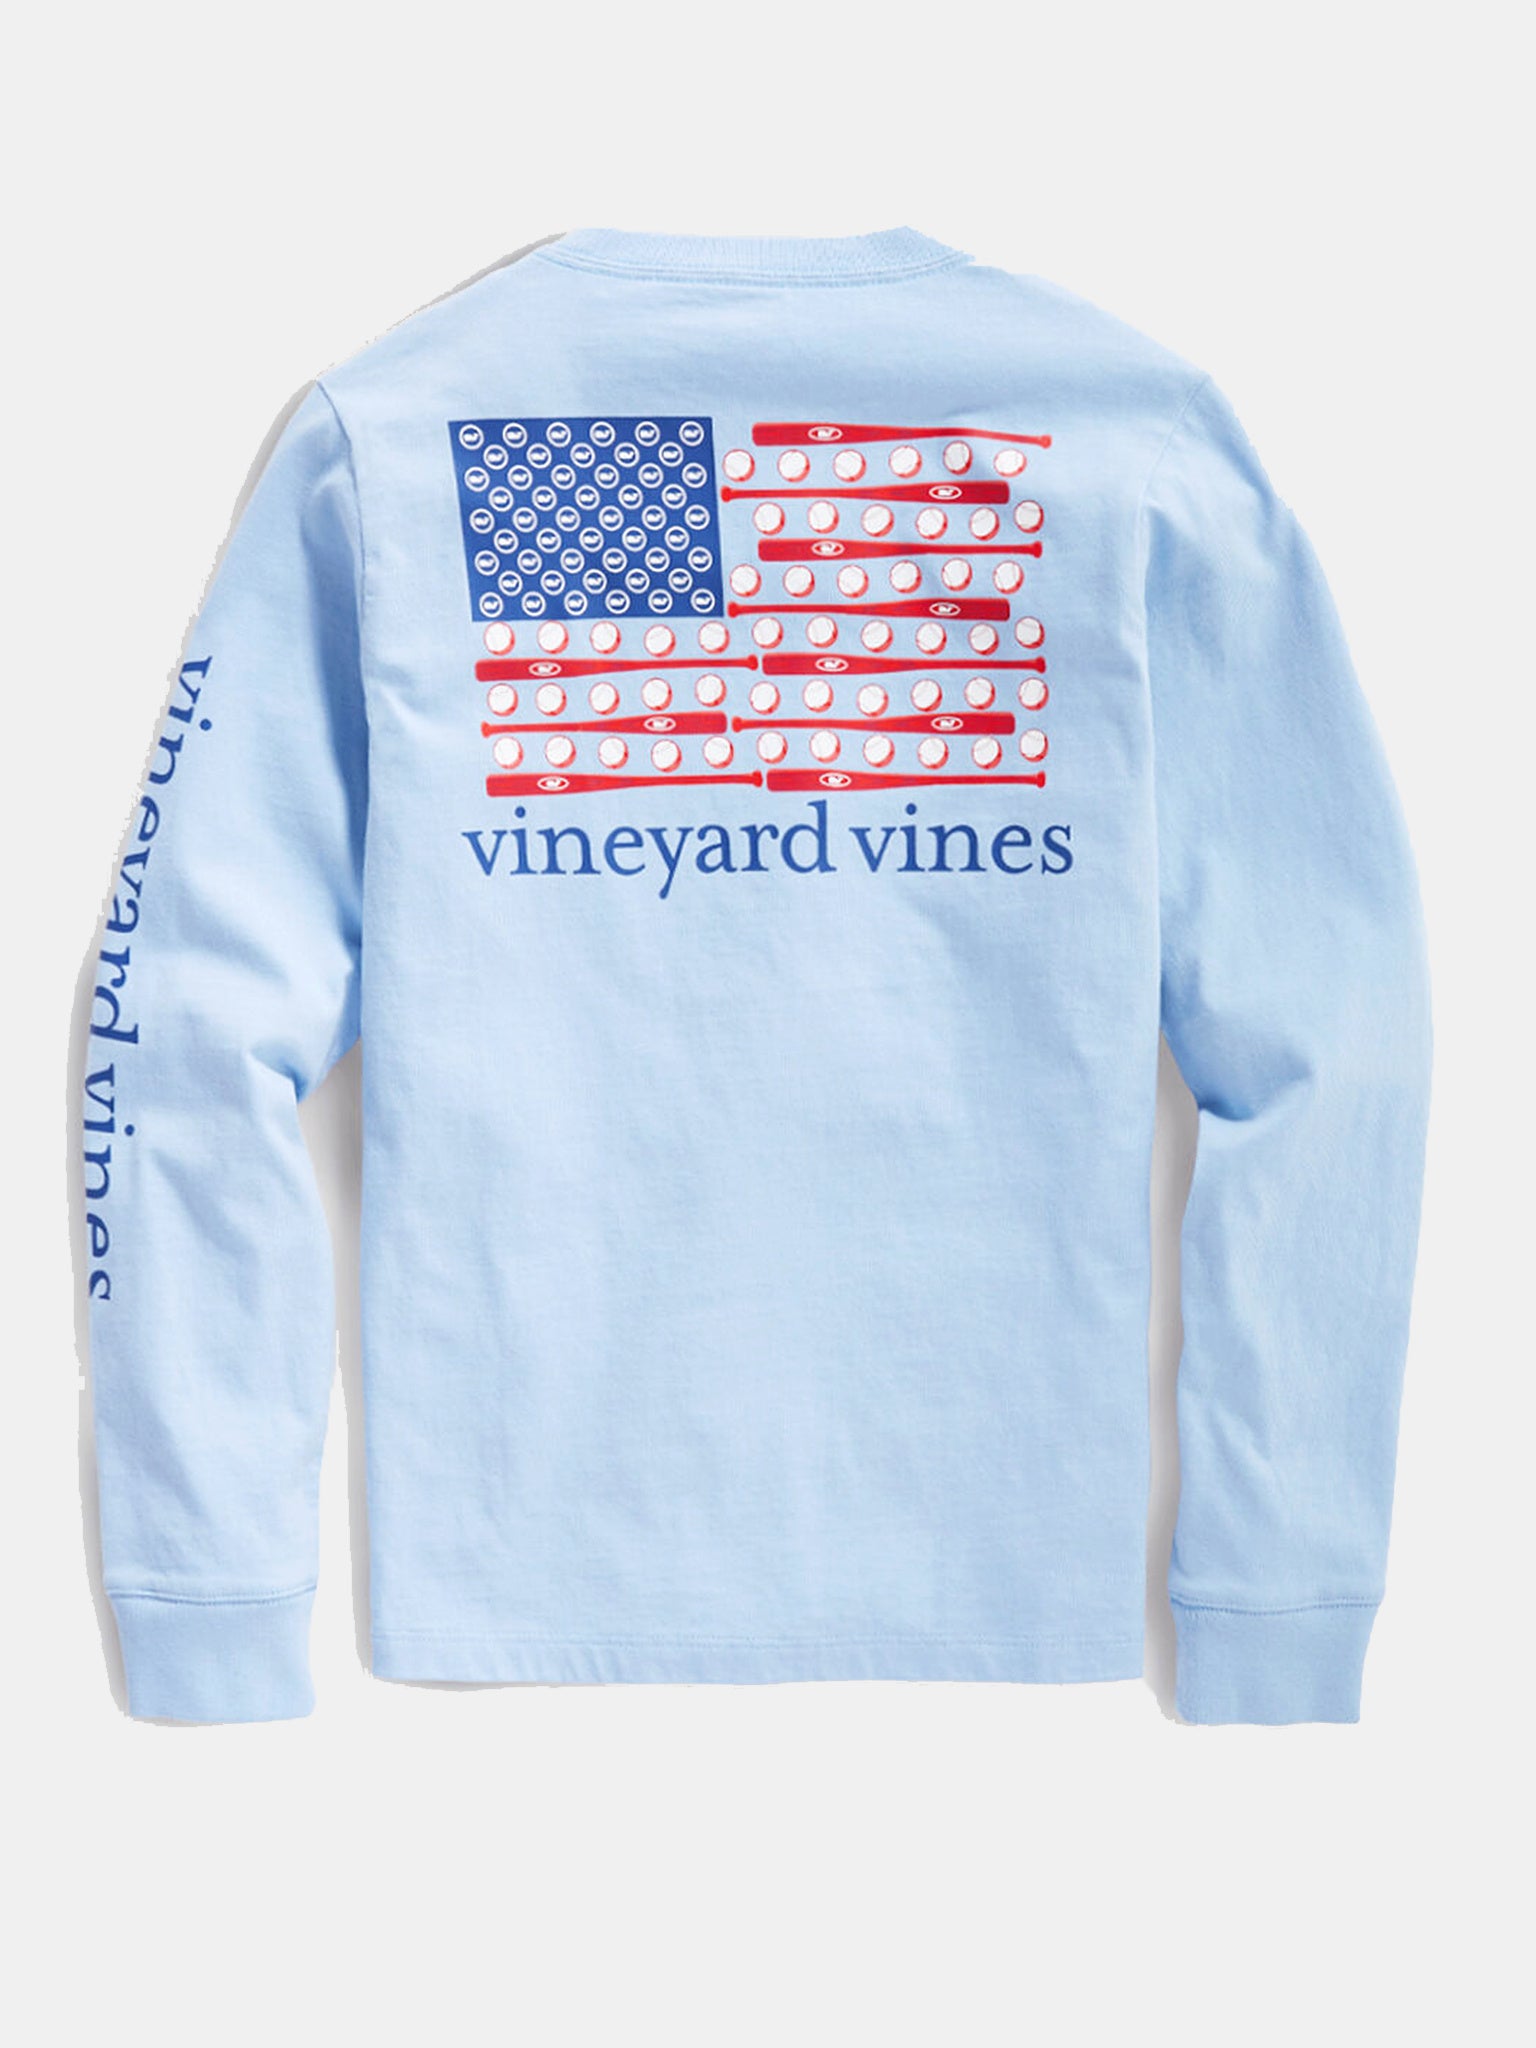 vineyard vines boys sweatshirt